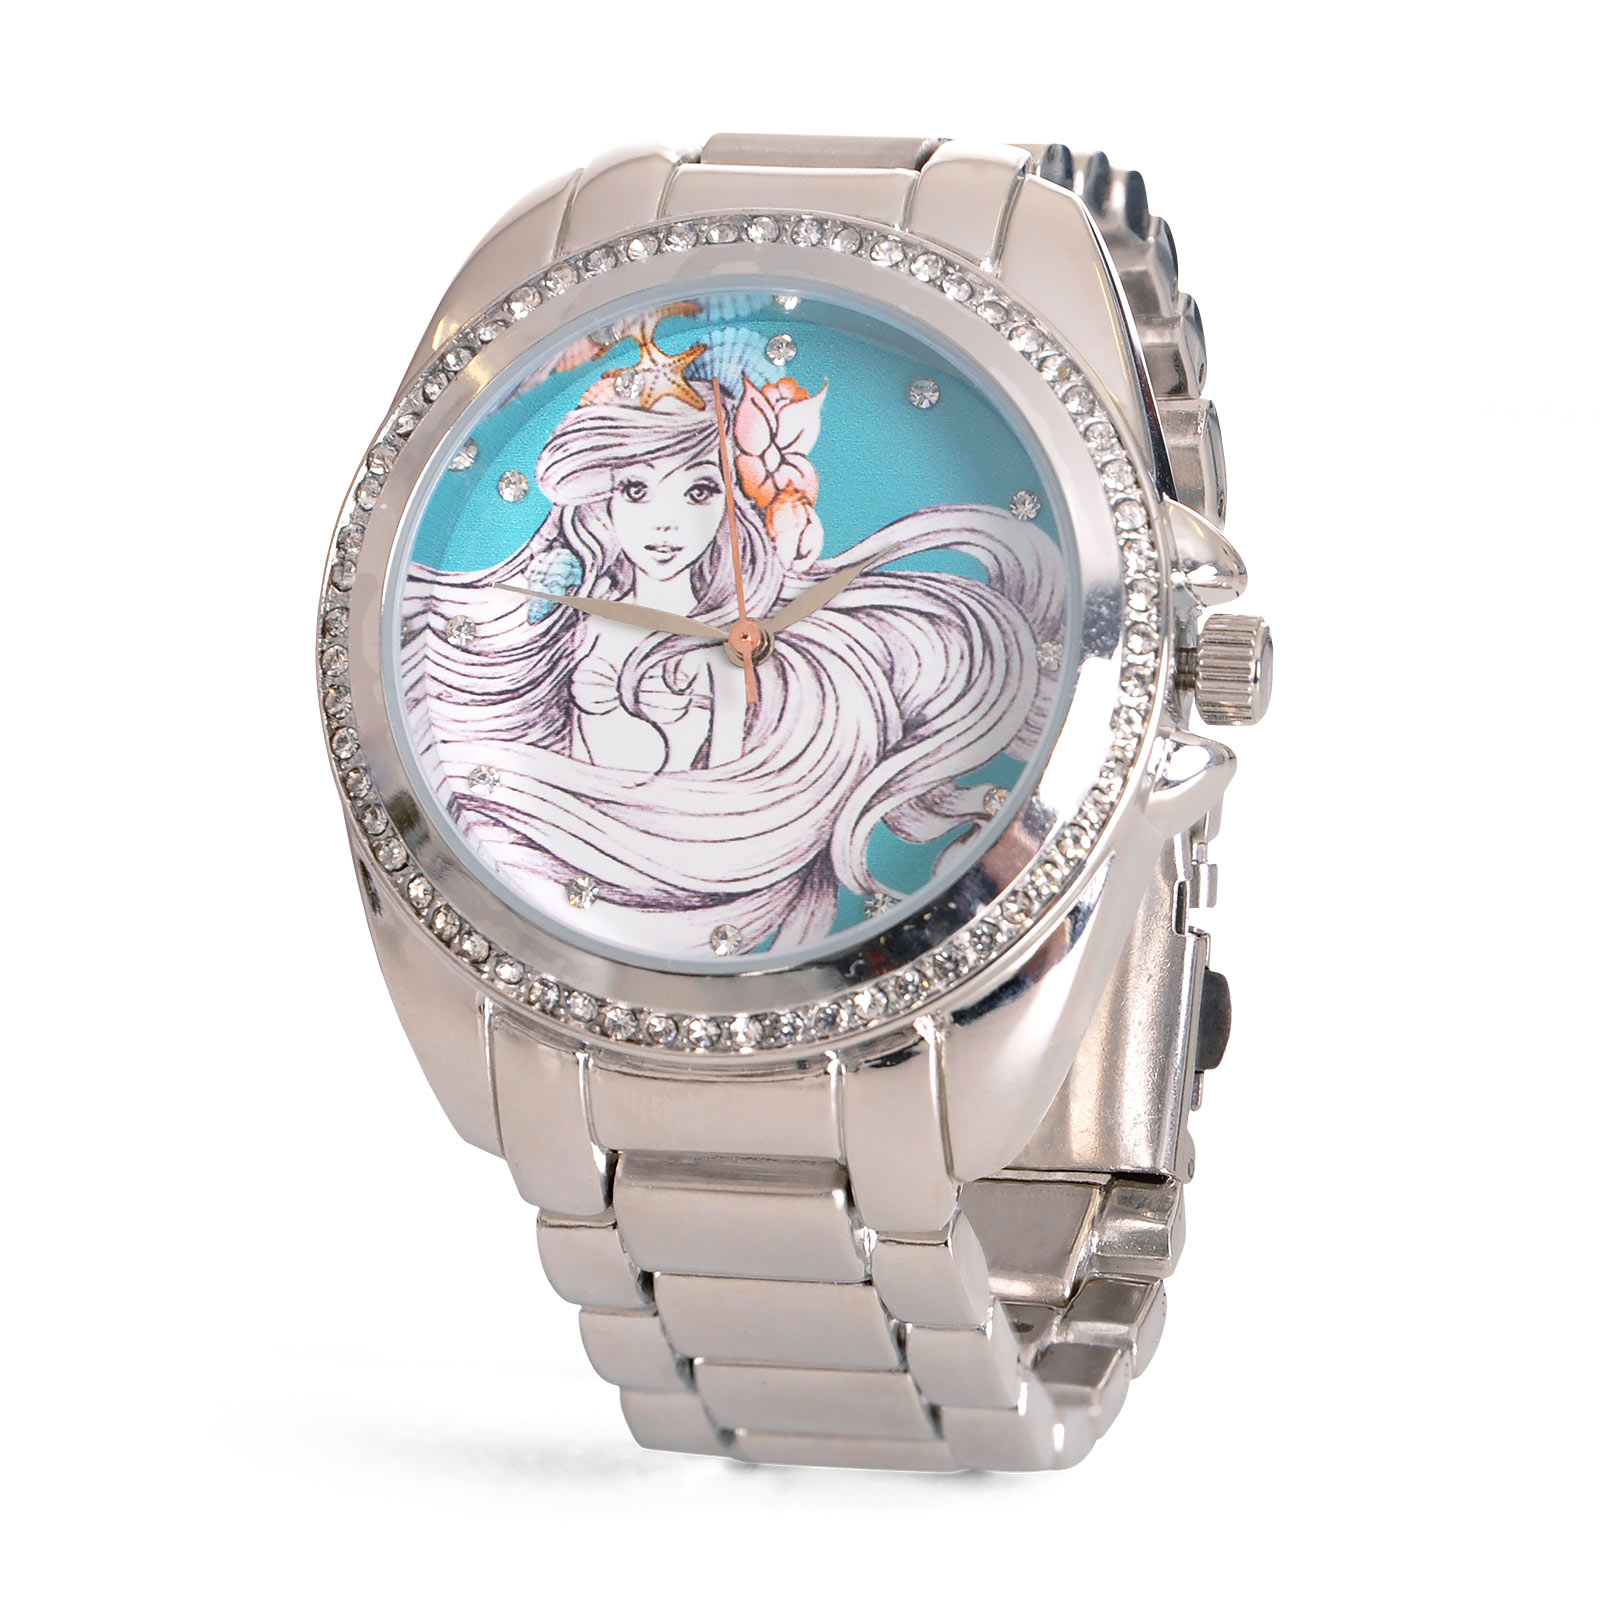 Arielle - Sketch Armbanduhr mit Kristallen